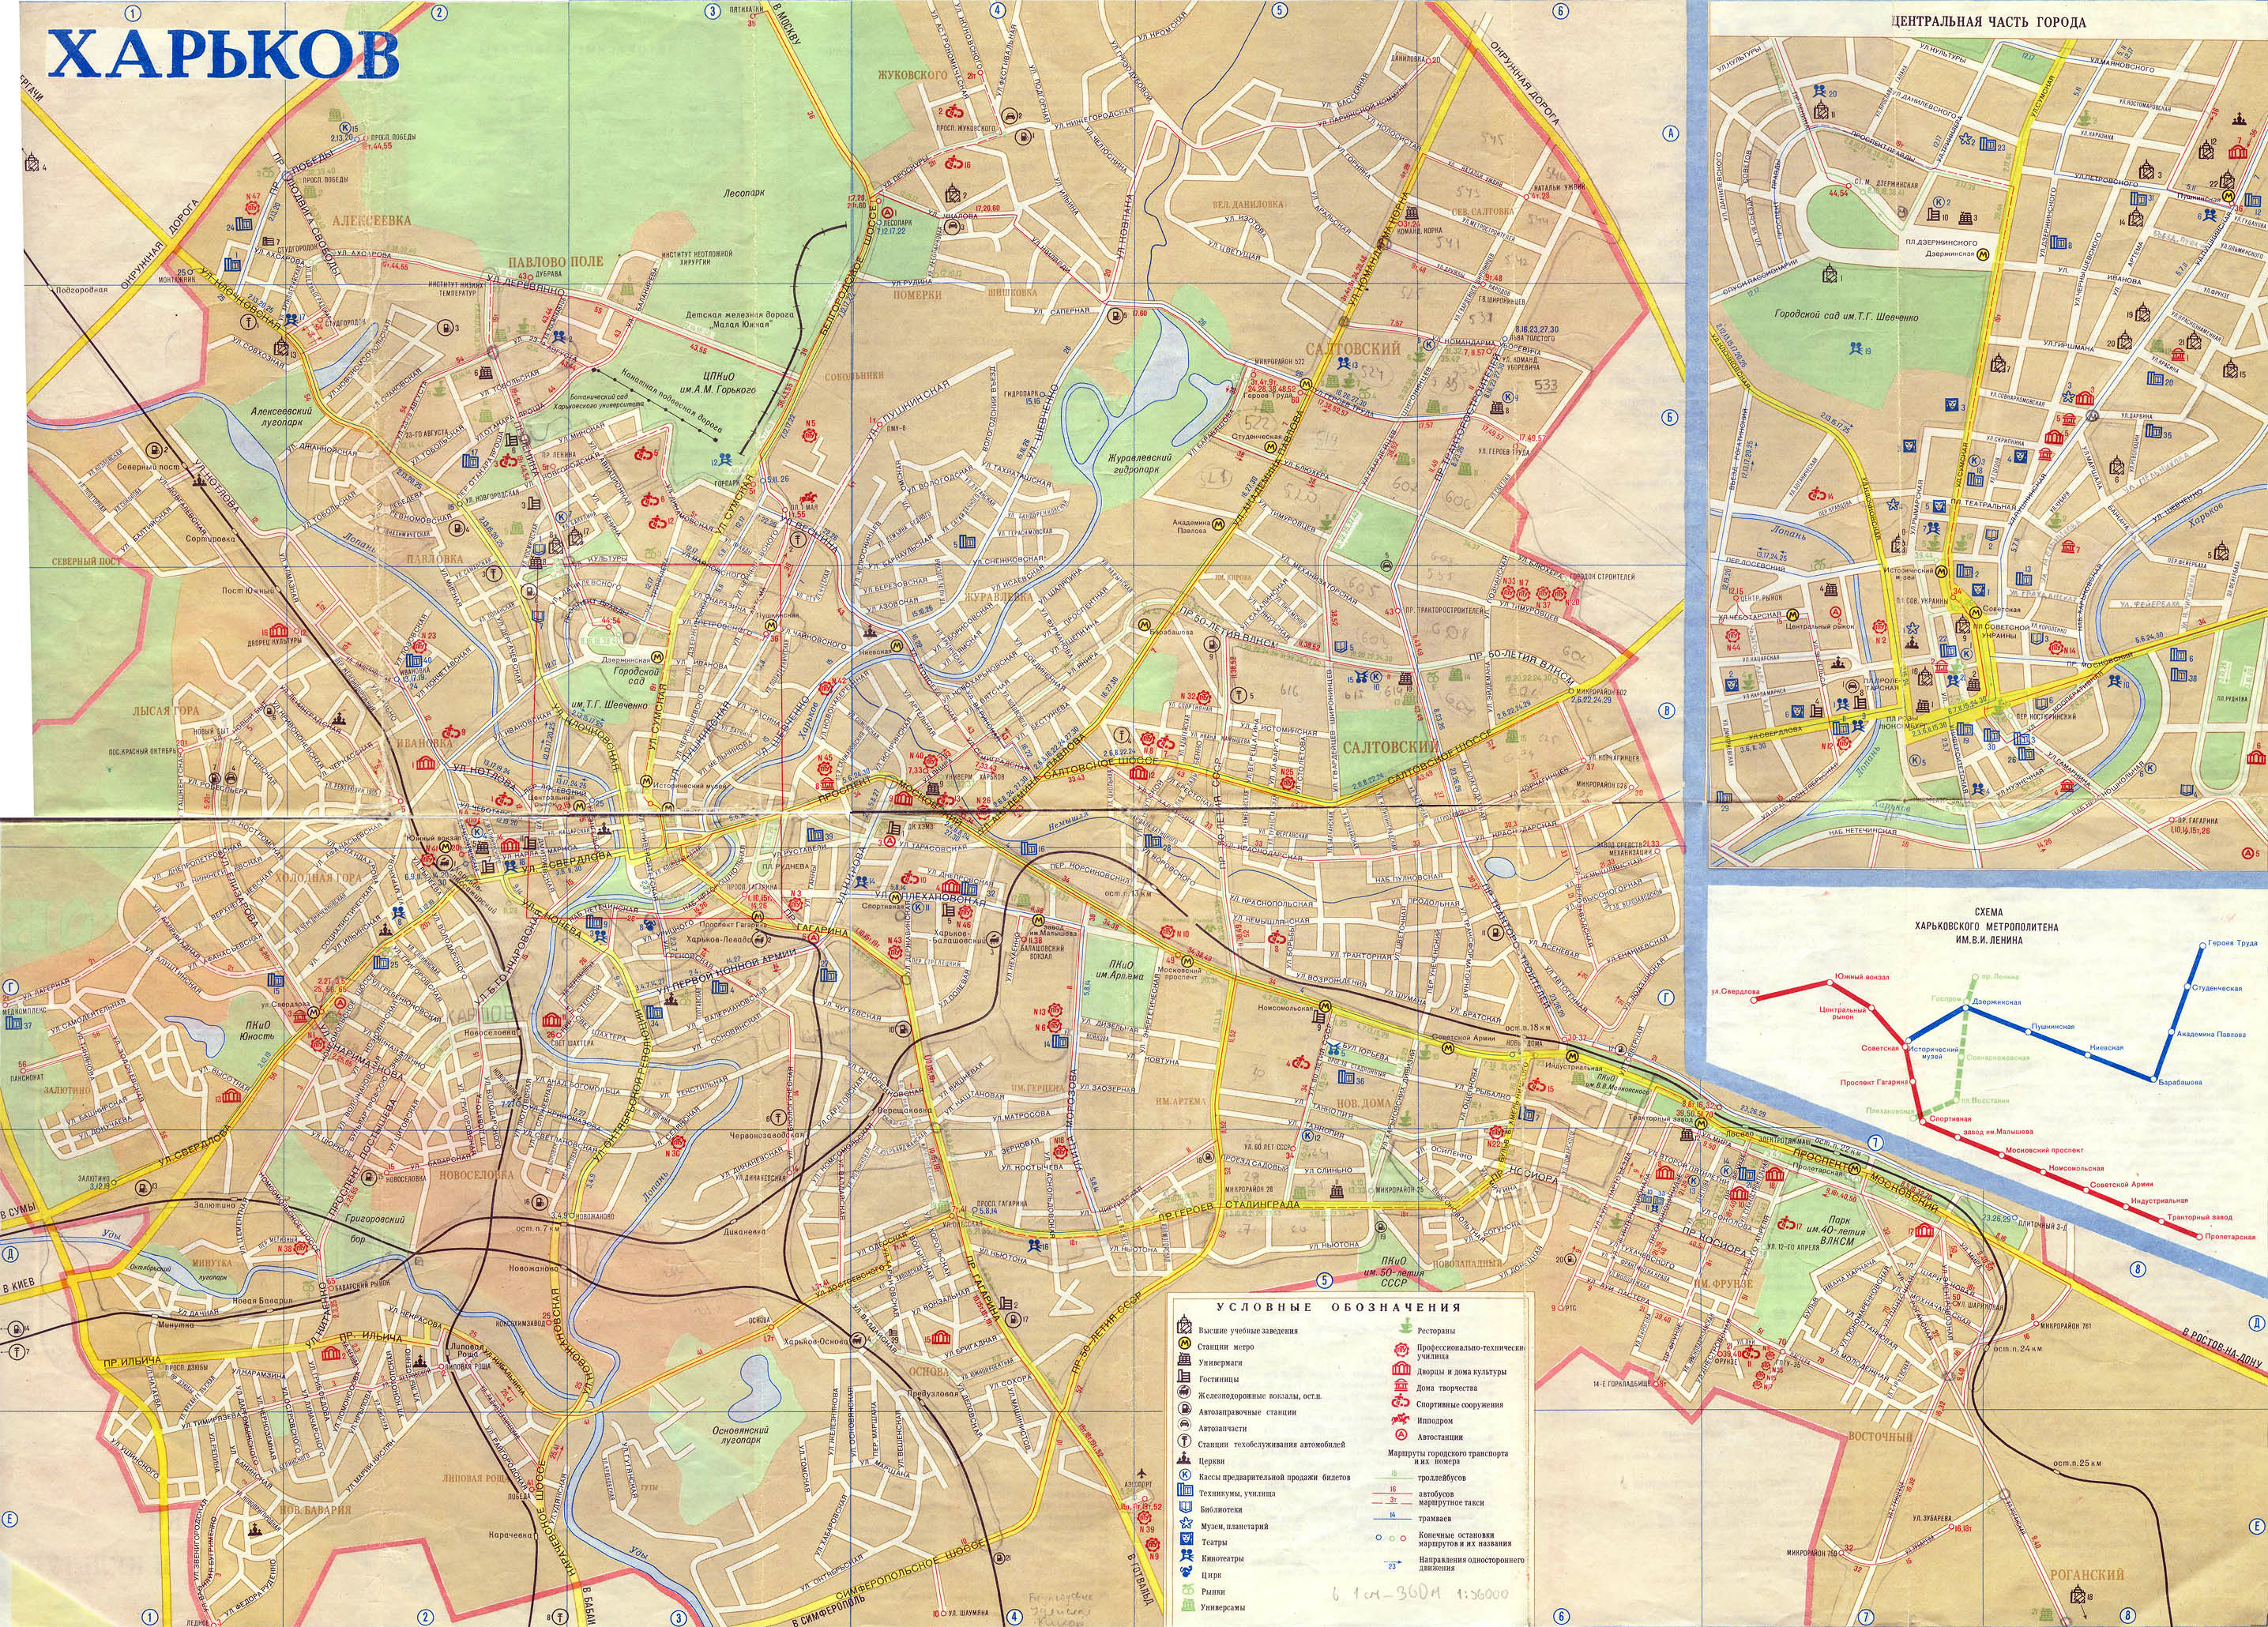 Схема пассажирского транспорта Харькова по состоянию на 1990 год